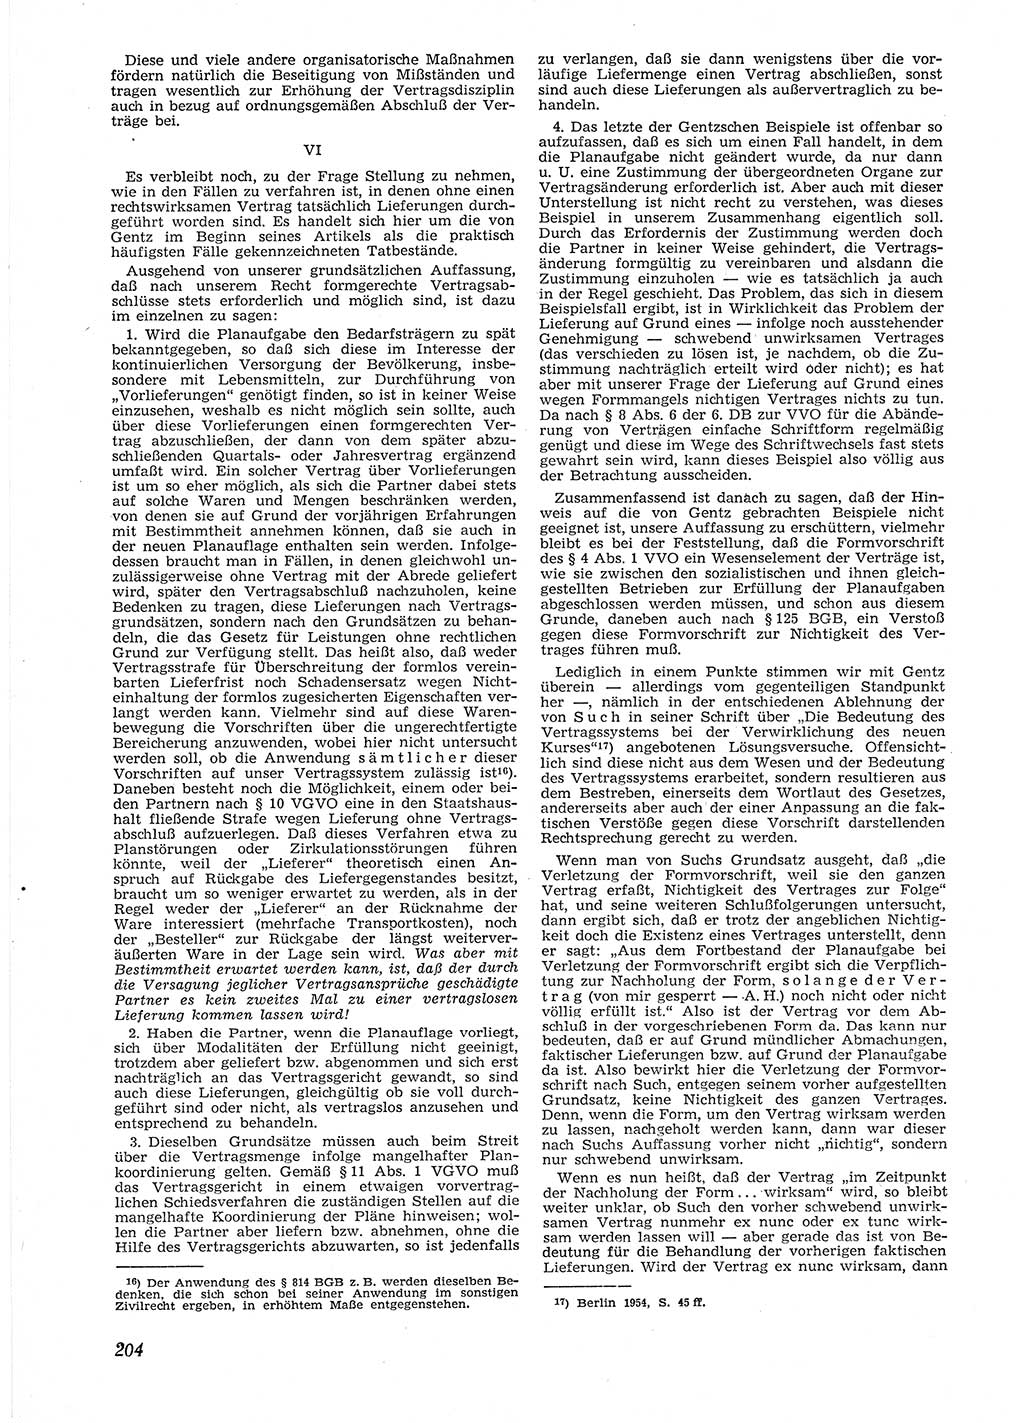 Neue Justiz (NJ), Zeitschrift für Recht und Rechtswissenschaft [Deutsche Demokratische Republik (DDR)], 9. Jahrgang 1955, Seite 204 (NJ DDR 1955, S. 204)